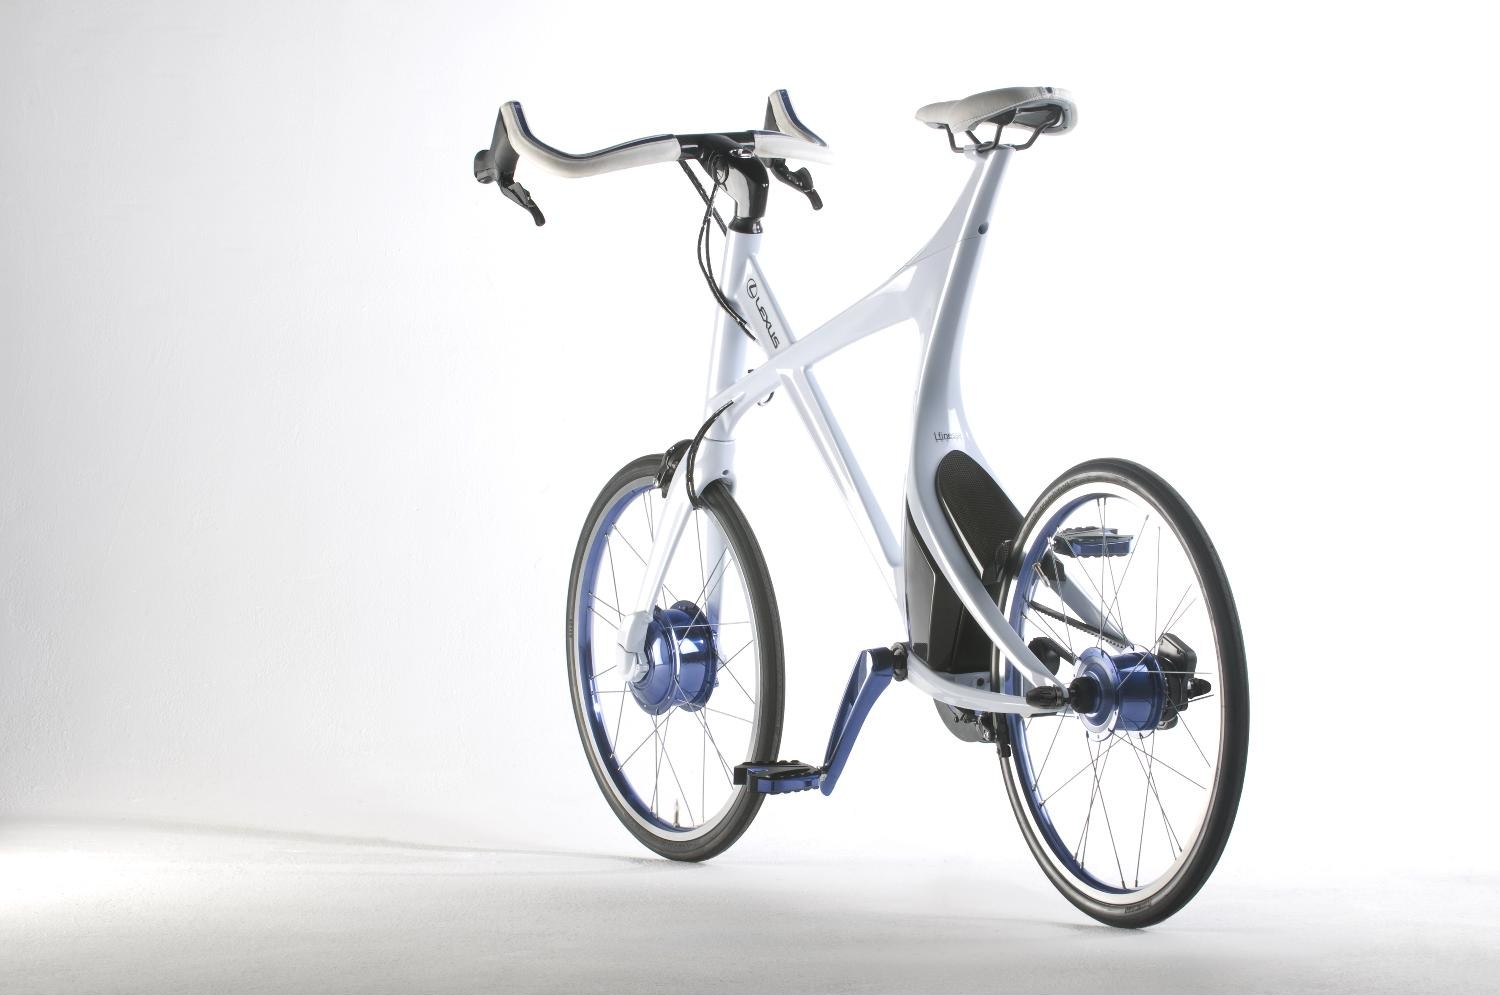 Lexus Hybrid Bicycle Concept